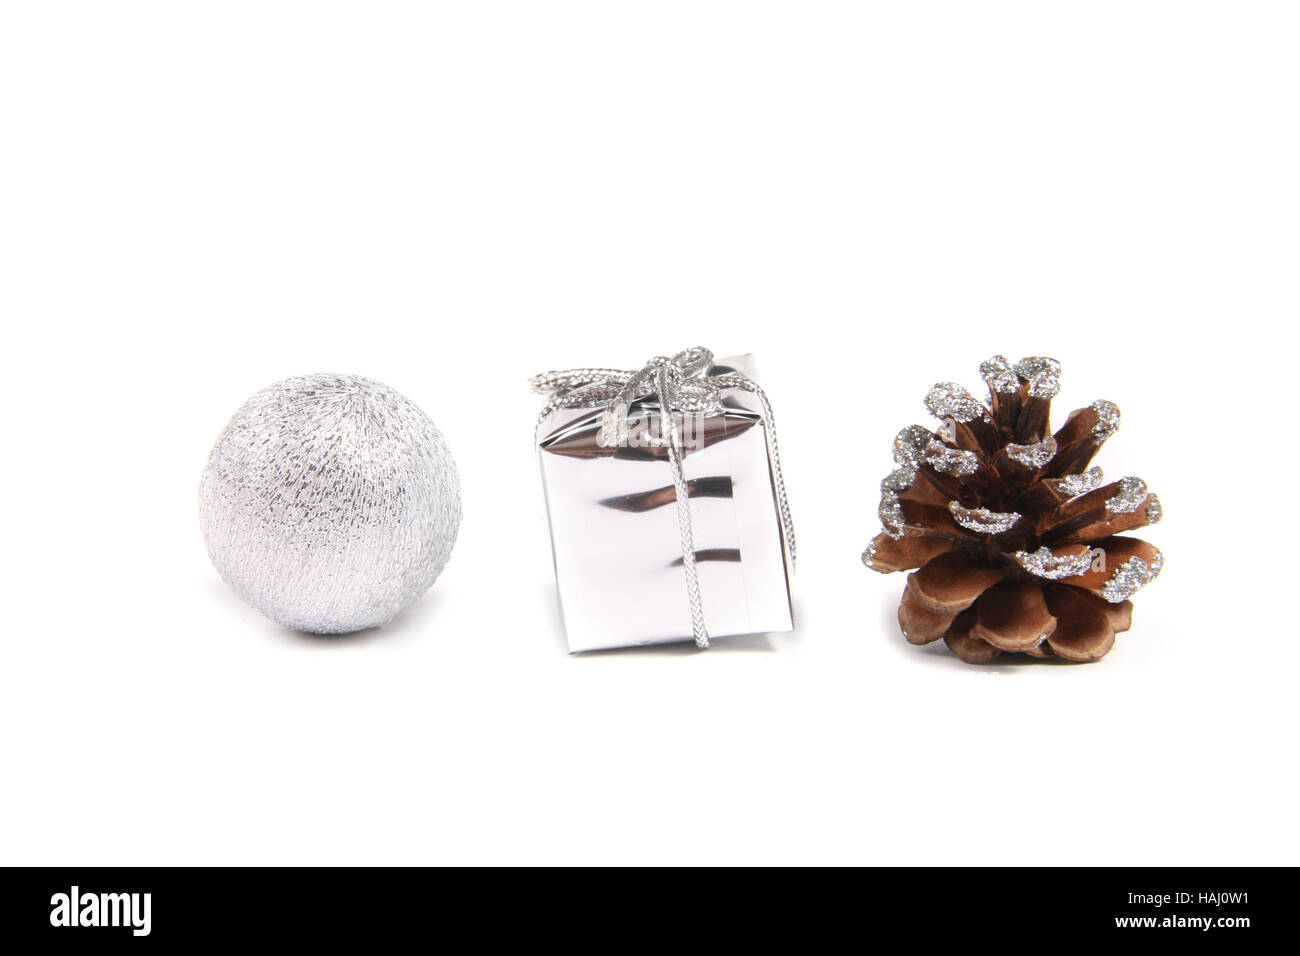 Drei dekorative Objekte für Weihnachten - Ball, Geschenk und Tannenzapfen Stockfoto